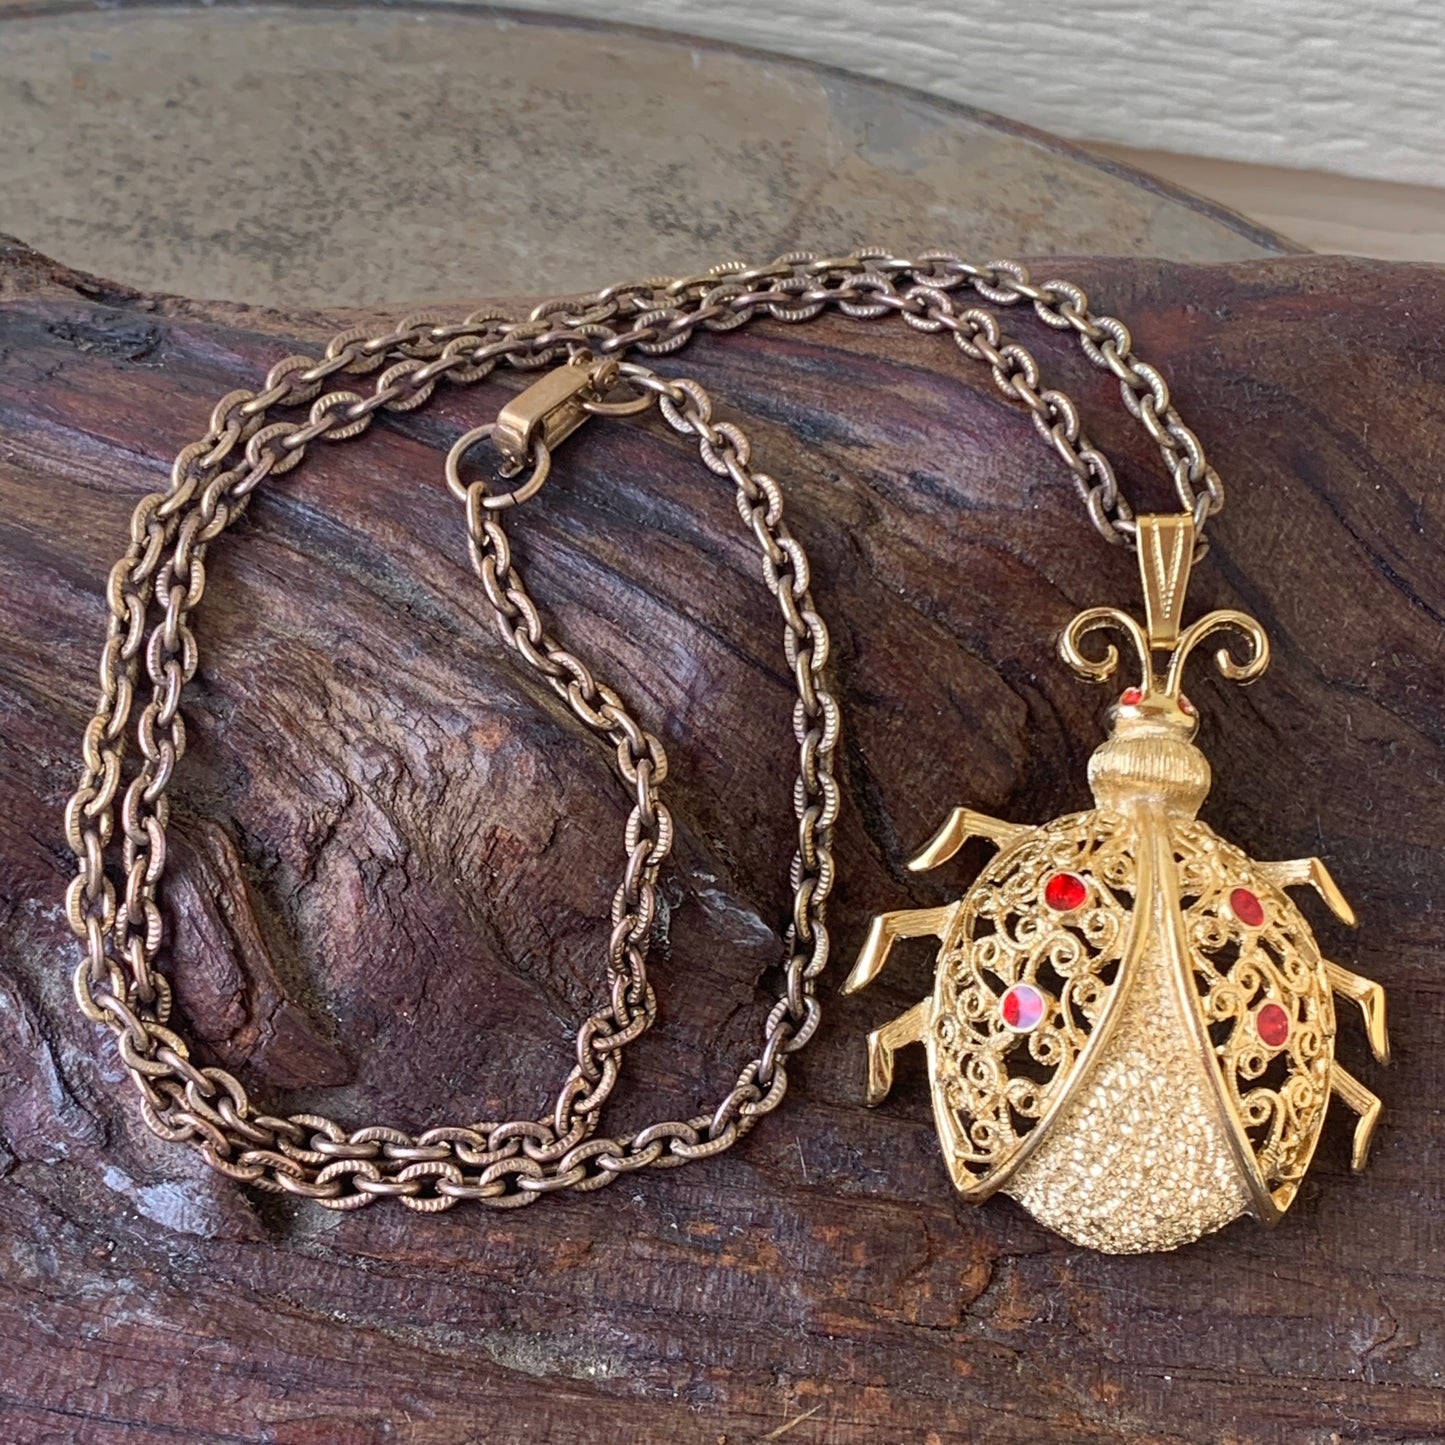 Vintage Rhinestone Ladybug Necklace